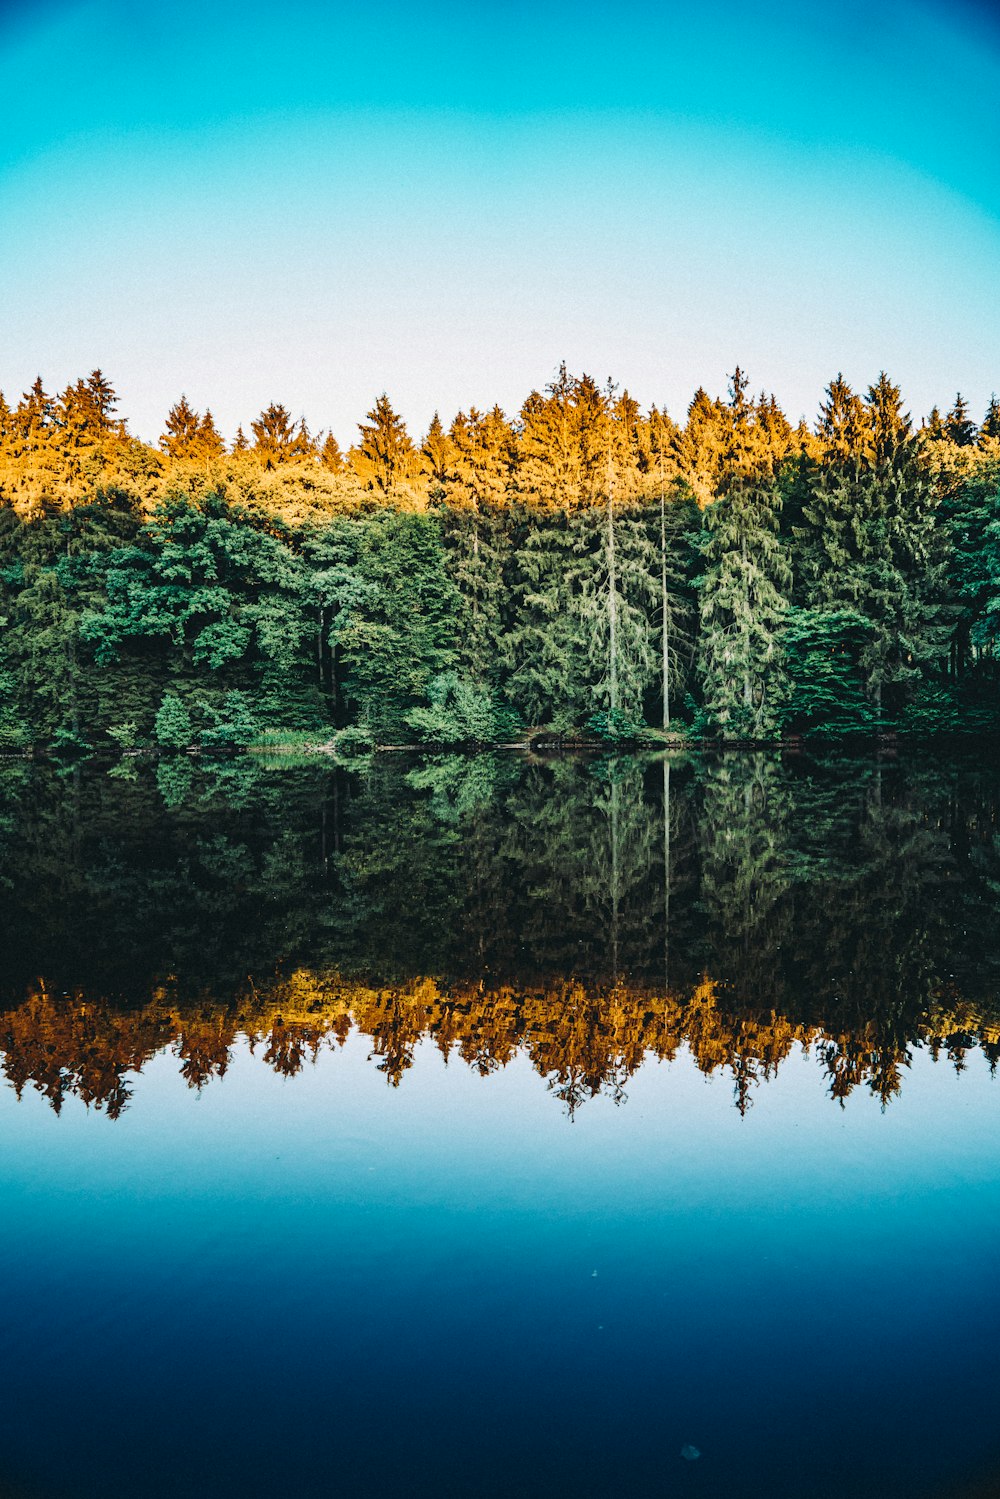 fotografia di alberi che riflettono sullo specchio d'acqua sotto il cielo azzurro